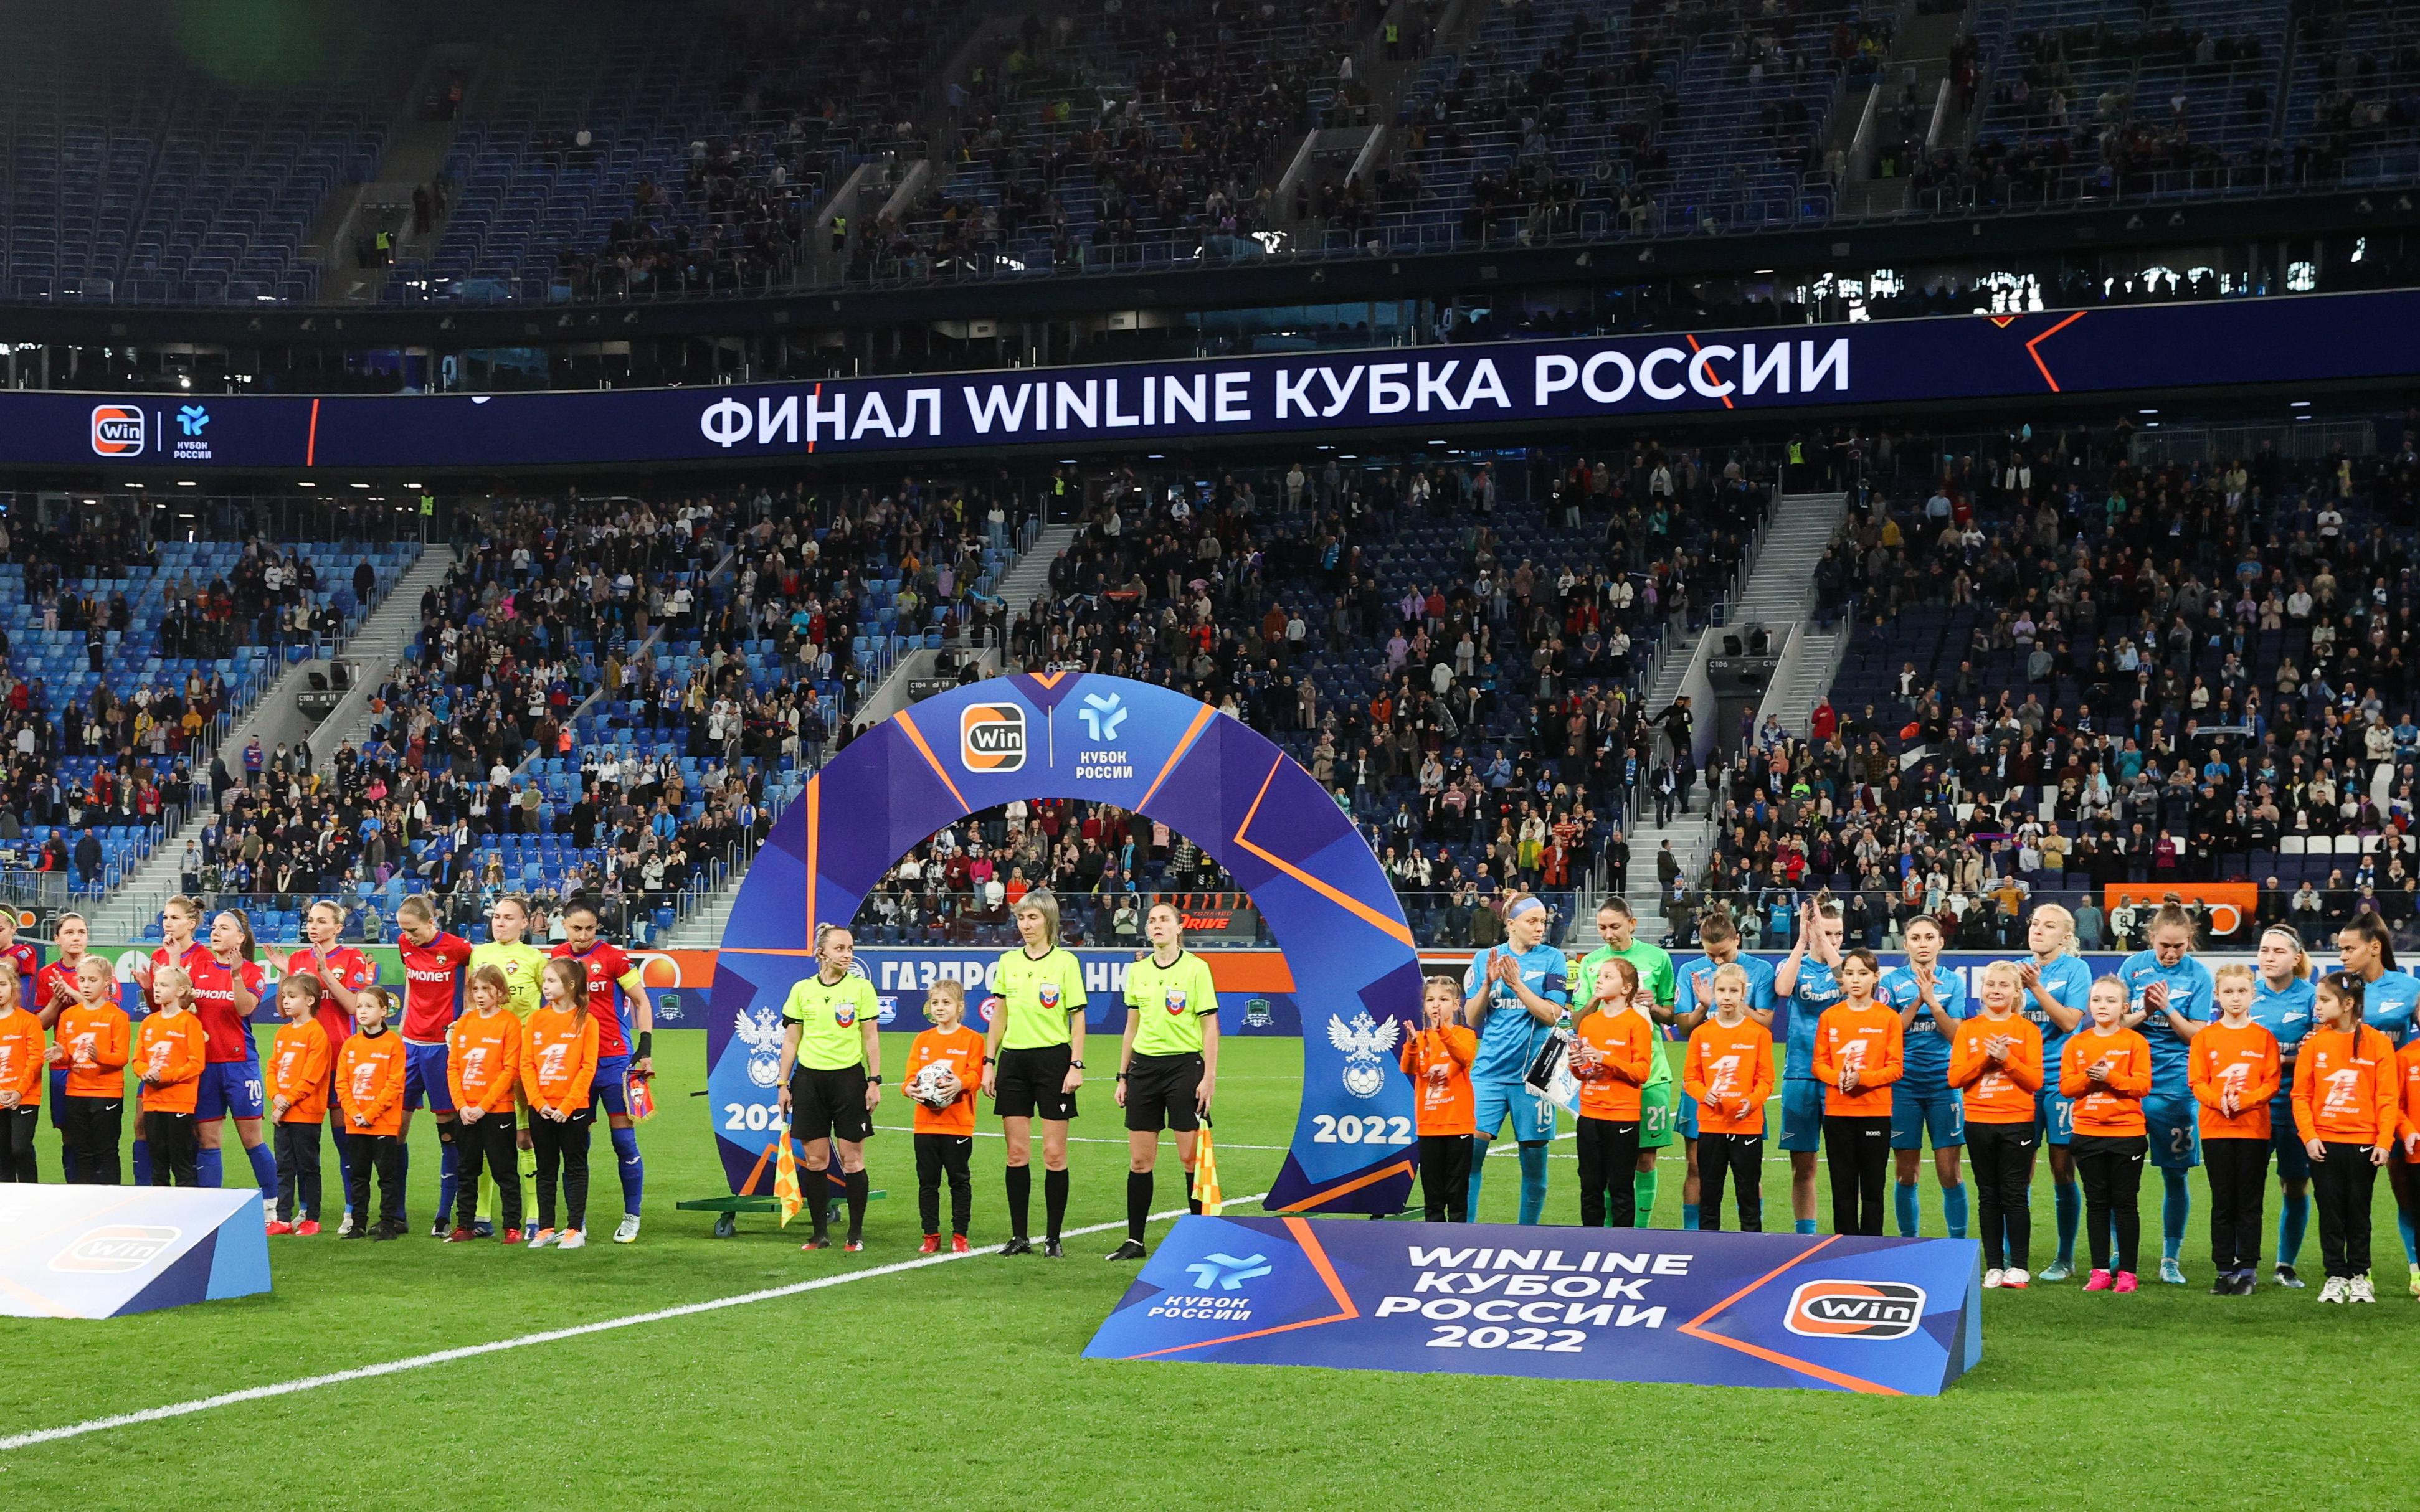 Рекорд посещаемости женского футбола России установили «Зенит» и ЦСКА